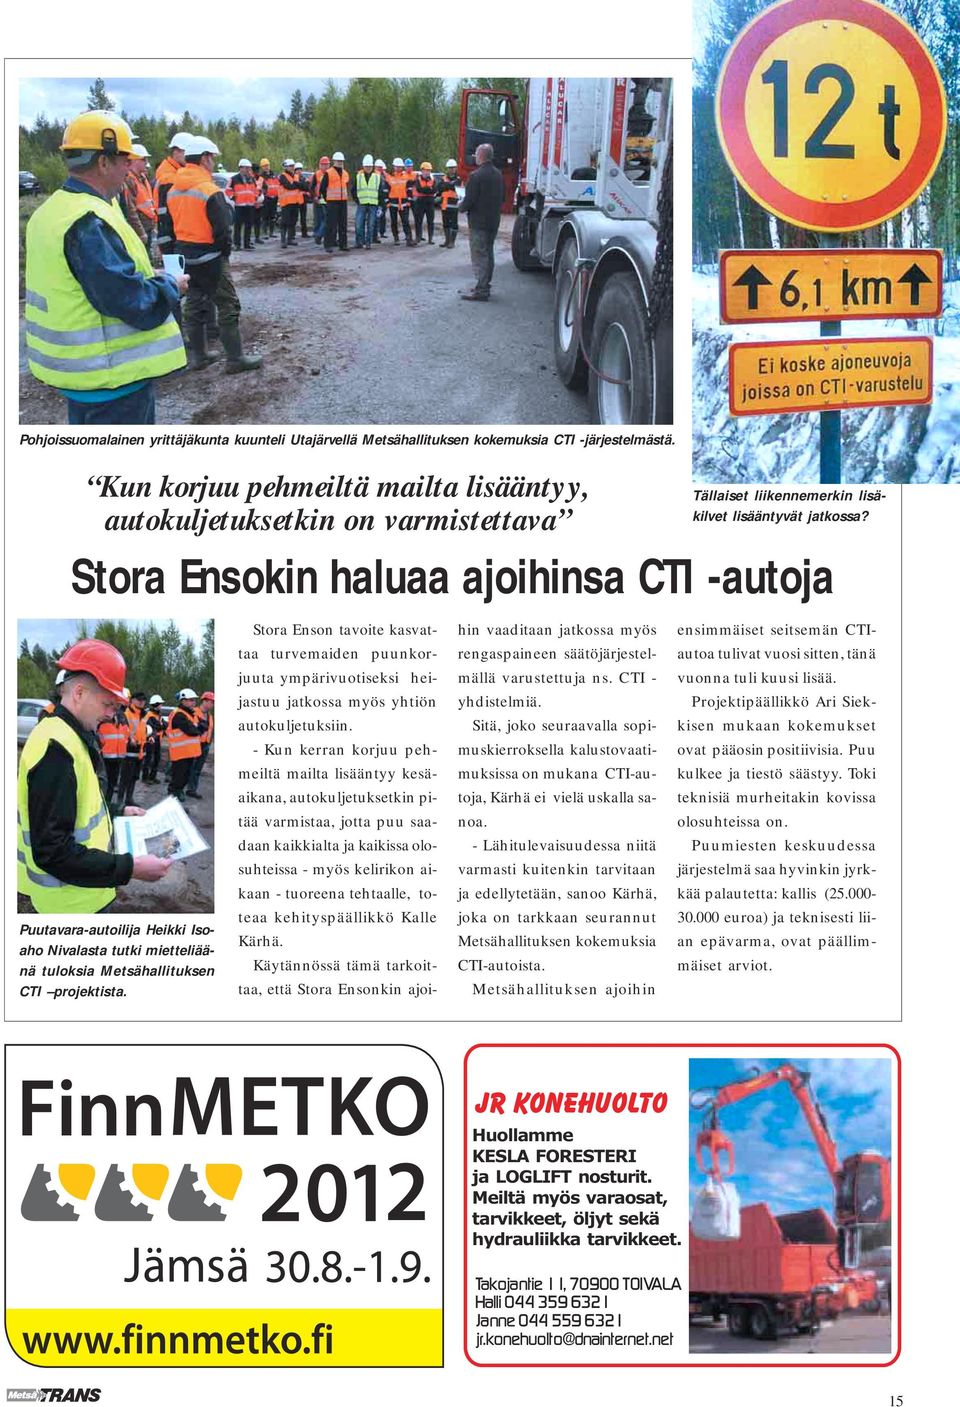 Metsähallituksen CTI projektista. Stora Enson tavoite kasvattaa turvemaiden puunkorjuuta ympärivuotiseksi heijastuu jatkossa myös yhtiön autokuljetuksiin.